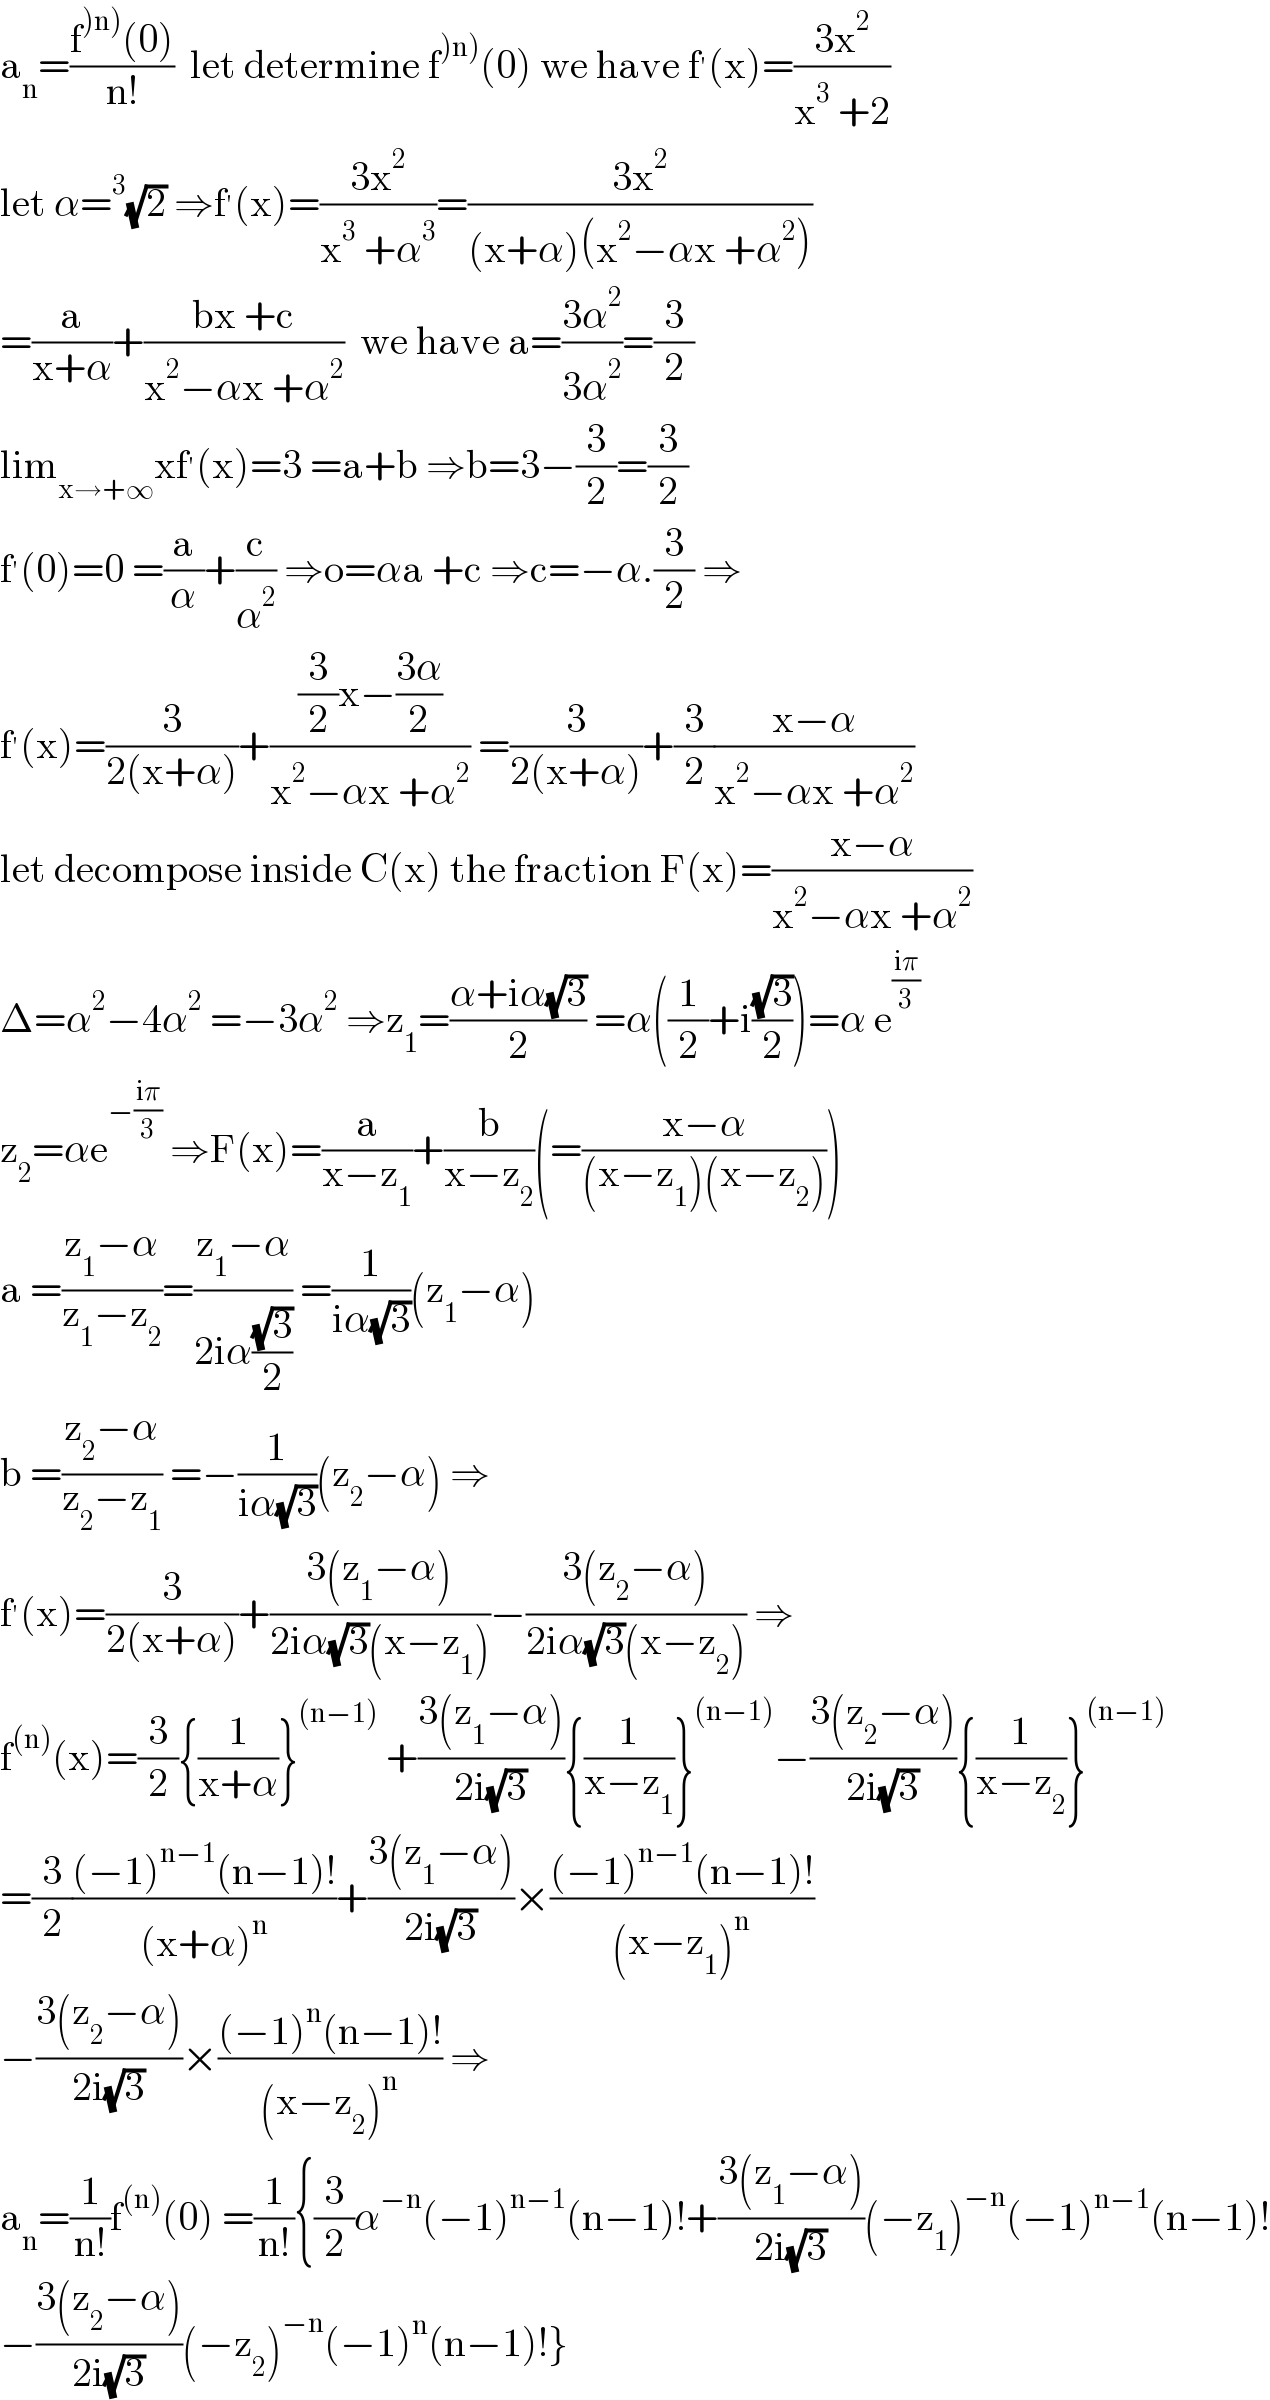 a_n =((f^()n)) (0))/(n!))  let determine f^()n)) (0) we have f^′ (x)=((3x^2 )/(x^3  +2))  let α=^3 (√2) ⇒f^′ (x)=((3x^2 )/(x^3  +α^3 ))=((3x^2 )/((x+α)(x^2 −αx +α^2 )))  =(a/(x+α))+((bx +c)/(x^2 −αx +α^2 ))  we have a=((3α^2 )/(3α^2 ))=(3/2)  lim_(x→+∞) xf^′ (x)=3 =a+b ⇒b=3−(3/2)=(3/2)  f^′ (0)=0 =(a/α)+(c/α^2 ) ⇒o=αa +c ⇒c=−α.(3/2) ⇒  f^′ (x)=(3/(2(x+α)))+(((3/2)x−((3α)/2))/(x^2 −αx +α^2 )) =(3/(2(x+α)))+(3/2)((x−α)/(x^2 −αx +α^2 ))  let decompose inside C(x) the fraction F(x)=((x−α)/(x^2 −αx +α^2 ))  Δ=α^2 −4α^2  =−3α^2  ⇒z_1 =((α+iα(√3))/2) =α((1/2)+i((√3)/2))=α e^((iπ)/3)   z_2 =αe^(−((iπ)/3))  ⇒F(x)=(a/(x−z_1 ))+(b/(x−z_2 ))(=((x−α)/((x−z_1 )(x−z_2 ))))  a =((z_1 −α)/(z_1 −z_2 ))=((z_1 −α)/(2iα((√3)/2))) =(1/(iα(√3)))(z_1 −α)  b =((z_2 −α)/(z_2 −z_1 )) =−(1/(iα(√3)))(z_2 −α) ⇒  f^′ (x)=(3/(2(x+α)))+((3(z_1 −α))/(2iα(√3)(x−z_1 )))−((3(z_2 −α))/(2iα(√3)(x−z_2 ))) ⇒  f^((n)) (x)=(3/2){(1/(x+α))}^((n−1))  +((3(z_1 −α))/(2i(√3))){(1/(x−z_1 ))}^((n−1)) −((3(z_2 −α))/(2i(√3))){(1/(x−z_2 ))}^((n−1))   =(3/2)(((−1)^(n−1) (n−1)!)/((x+α)^n ))+((3(z_1 −α))/(2i(√3)))×(((−1)^(n−1) (n−1)!)/((x−z_1 )^n ))  −((3(z_2 −α))/(2i(√3)))×(((−1)^n (n−1)!)/((x−z_2 )^n )) ⇒  a_n =(1/(n!))f^((n)) (0) =(1/(n!)){(3/2)α^(−n) (−1)^(n−1) (n−1)!+((3(z_1 −α))/(2i(√3)))(−z_1 )^(−n) (−1)^(n−1) (n−1)!  −((3(z_2 −α))/(2i(√3)))(−z_2 )^(−n) (−1)^n (n−1)!}  